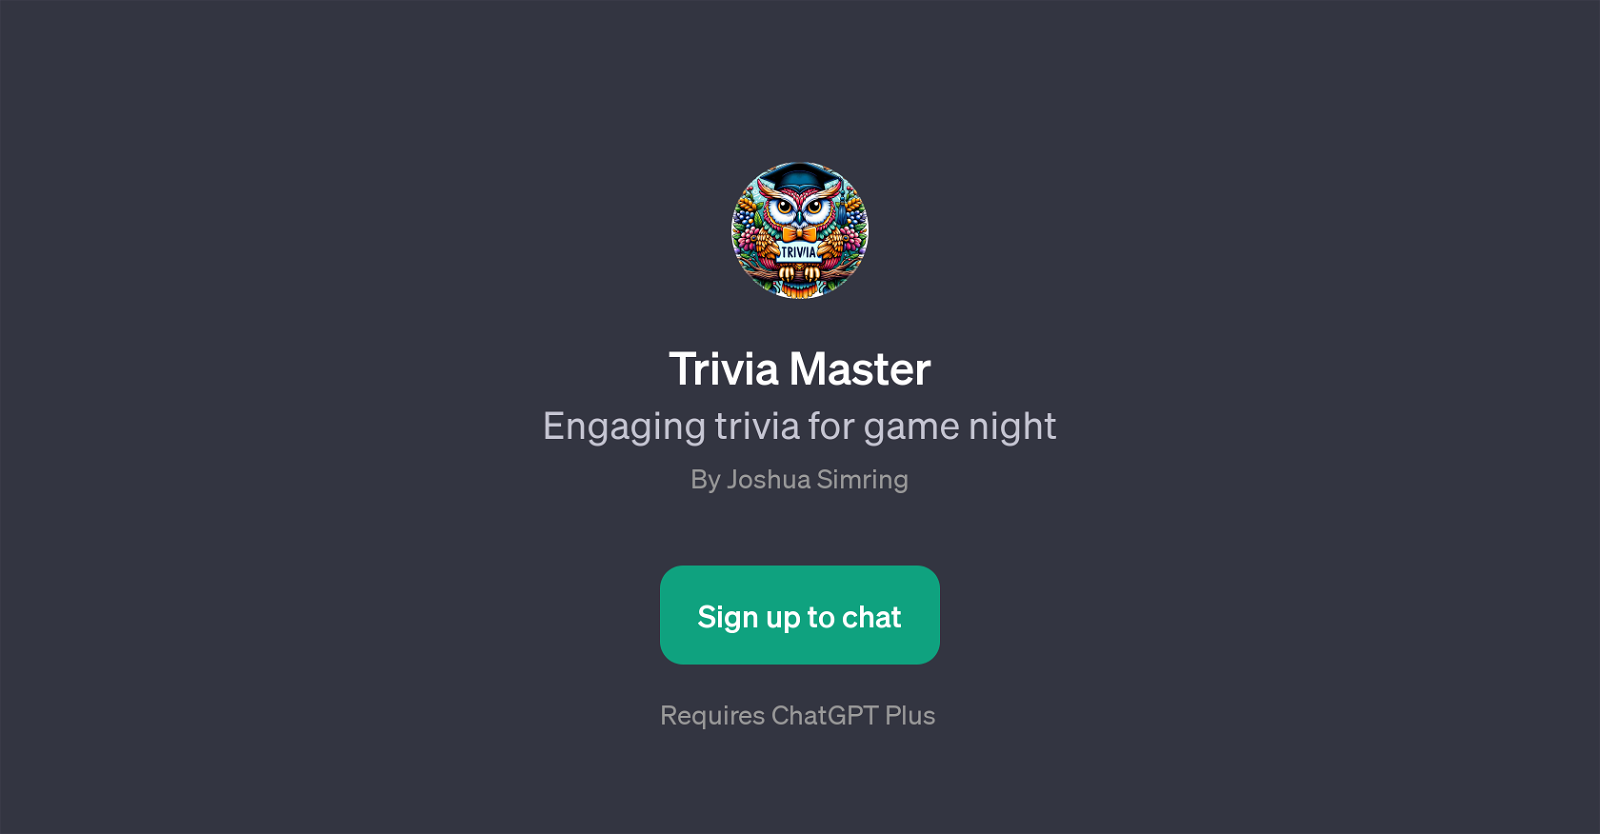 Trivia Master website